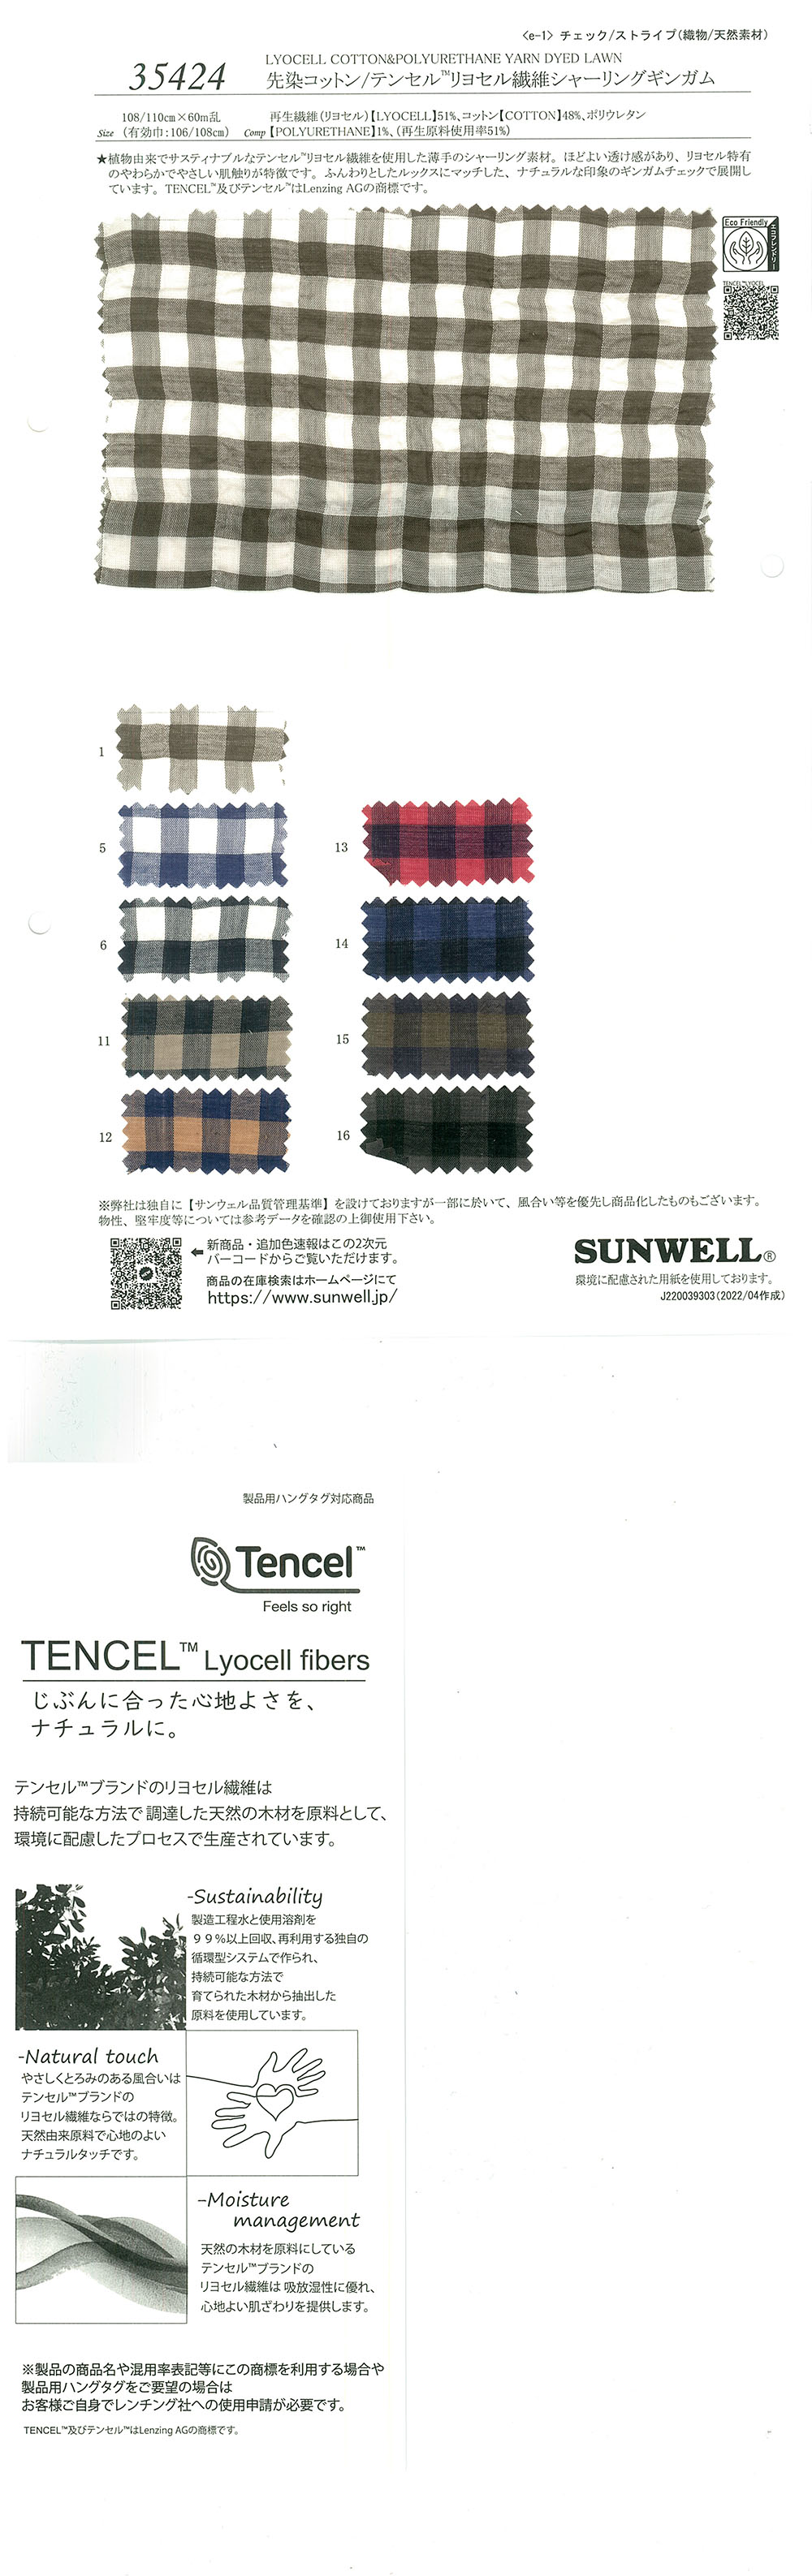 35424 Sợi Bông Nhuộm / Tencel (TM) Lyocell Fiber Shirring Gingham[Vải] SUNWELL ( Giếng Trời )